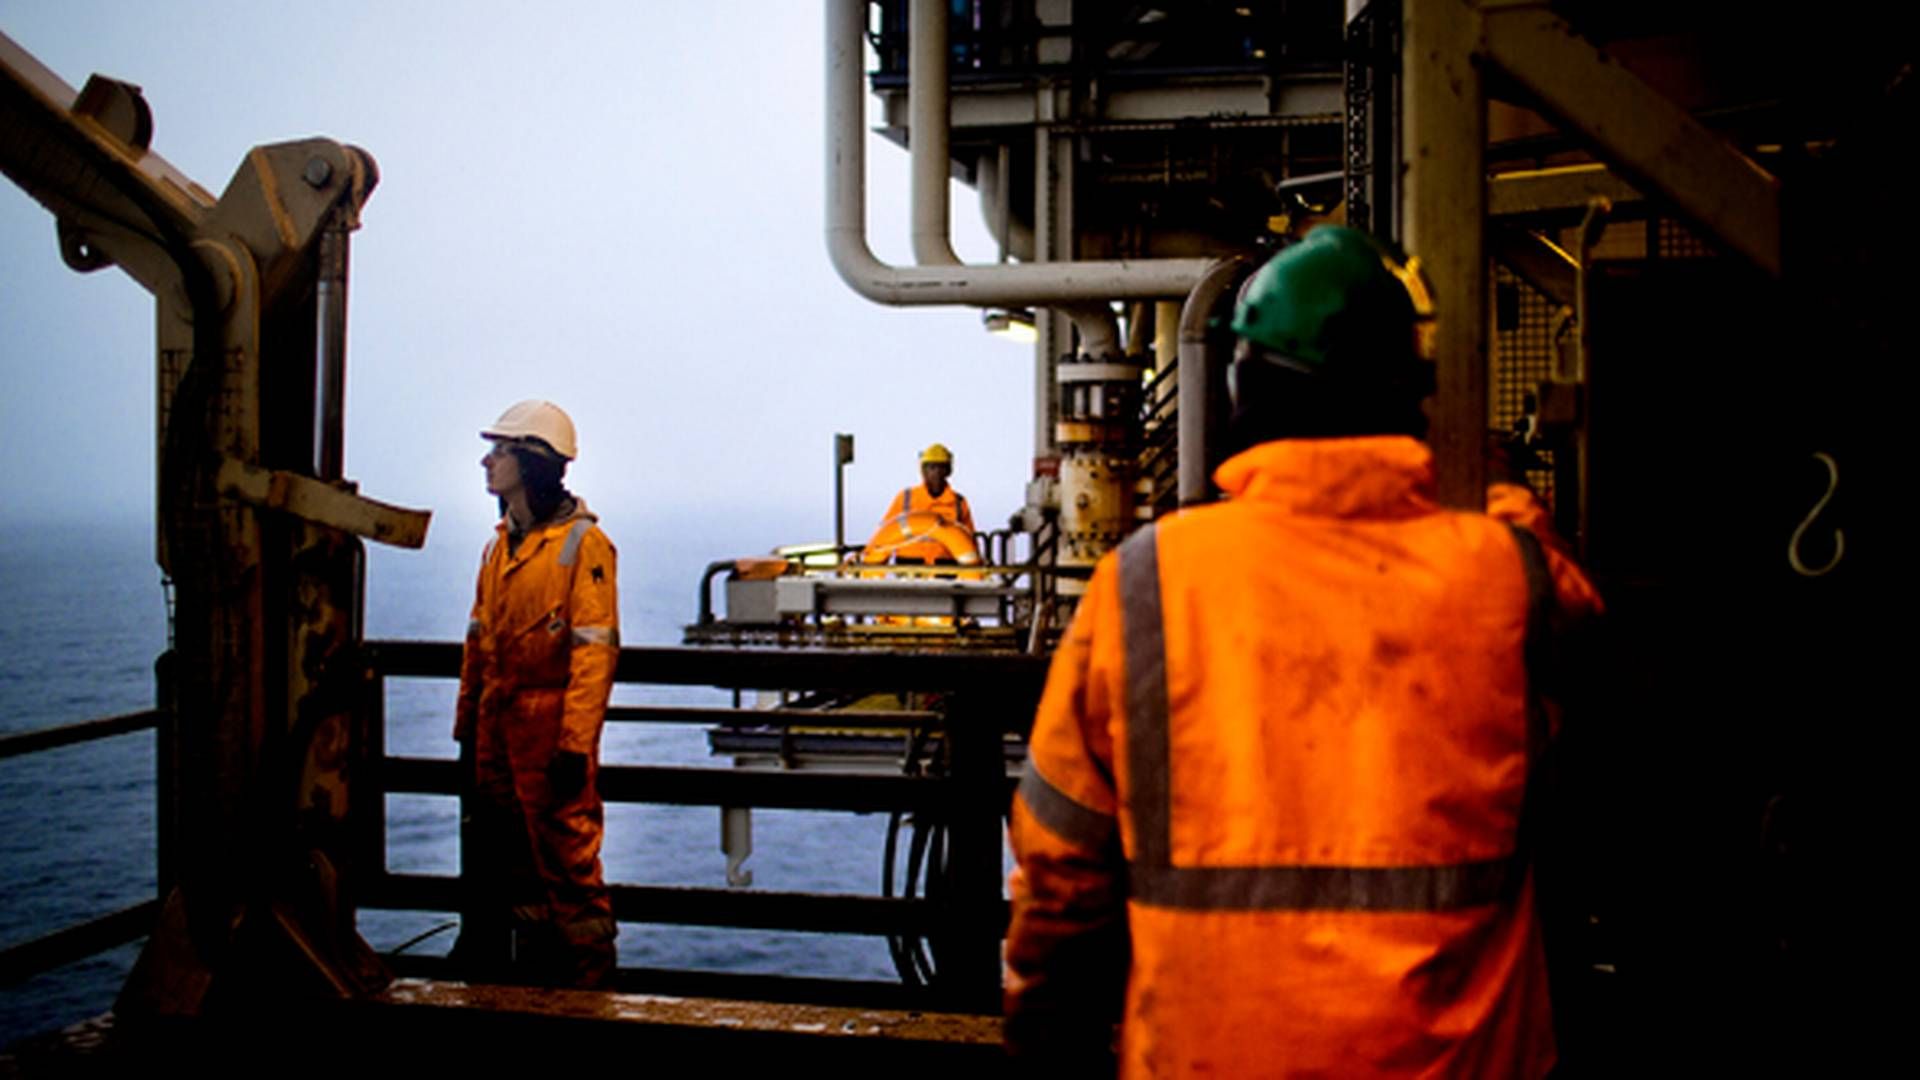 Tyra-platformen i Nordsøen skal lukkes ned og bygges om. Det skaber nye markedsvilkår og er en potentiel risiko for konkurrencesituationen på gasmarkedet, vurderer Forsyningstilsynet. | Foto: Magnus Holm / Politiken / Ritzau Scanpix